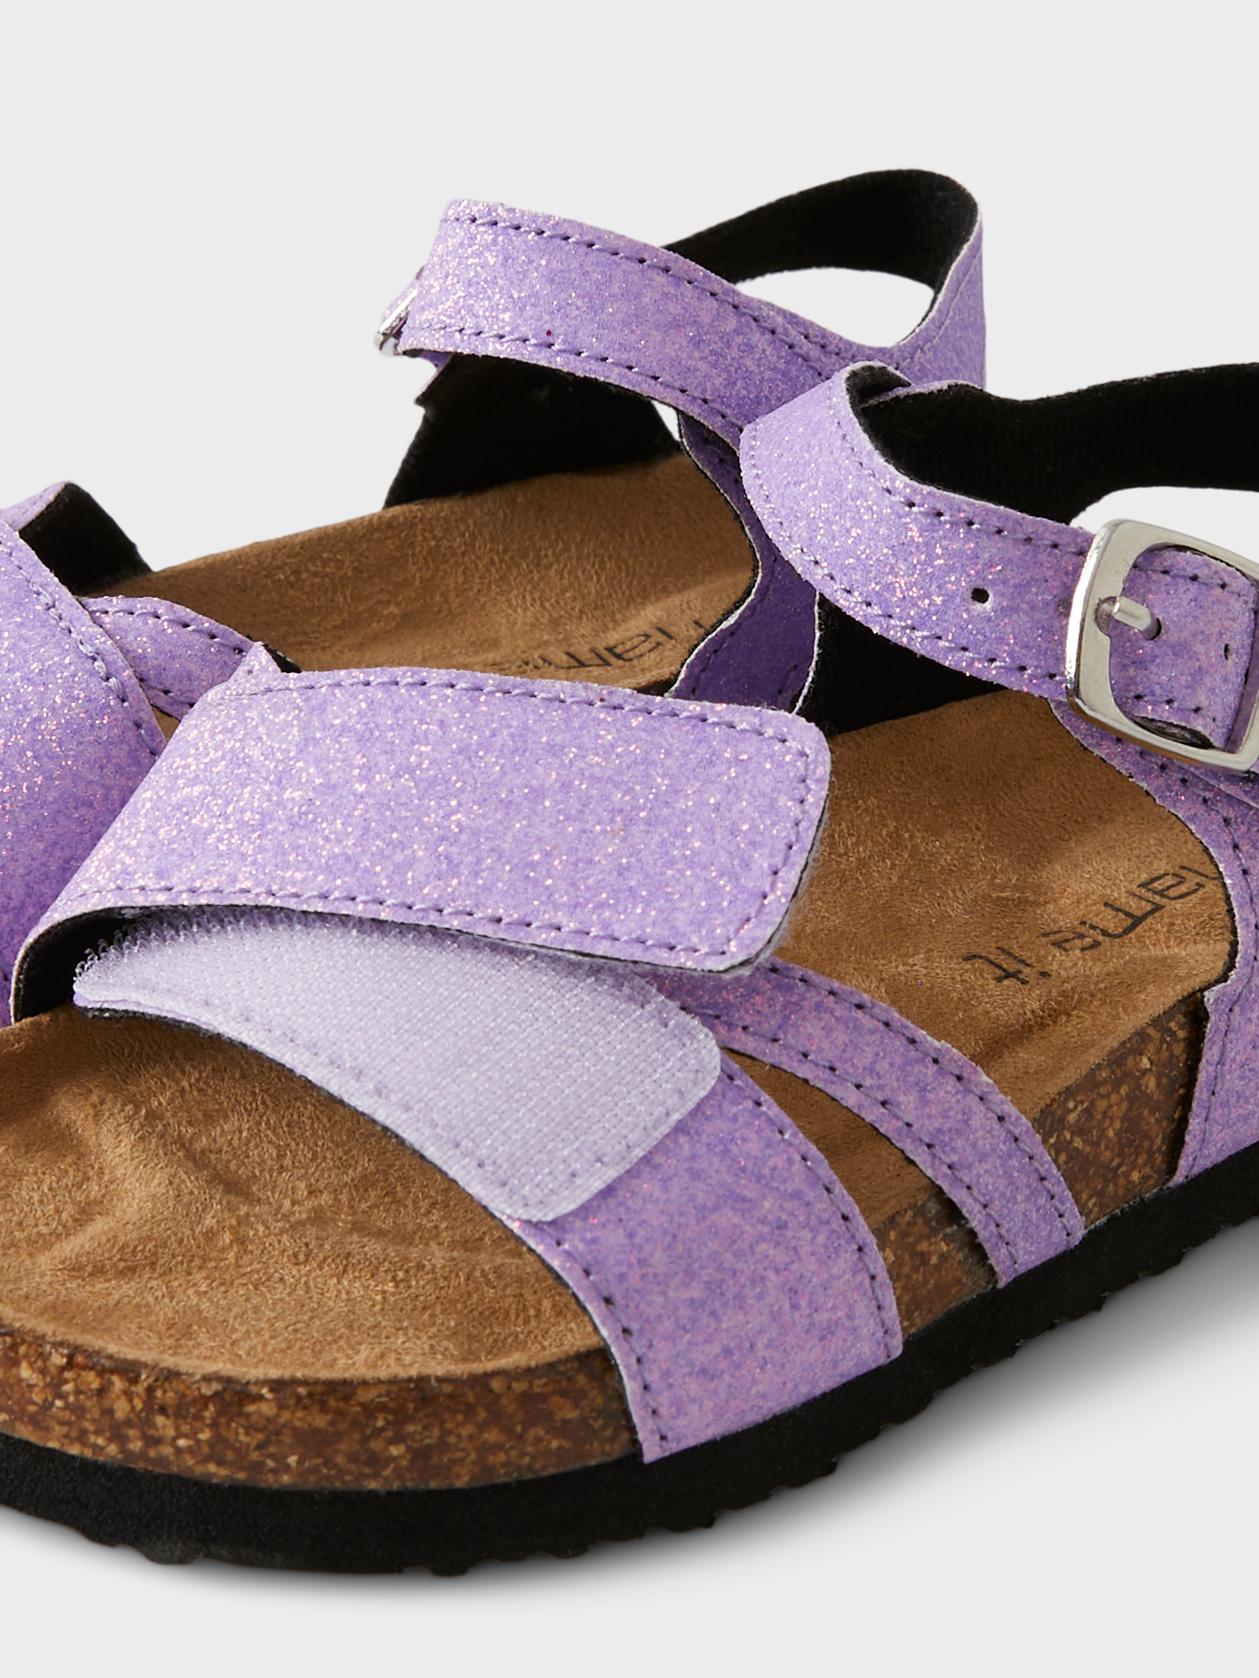 Ugyldigt hvordan man bruger Marty Fielding Name it sandal med glimmer - Sand verbena - MamaMilla